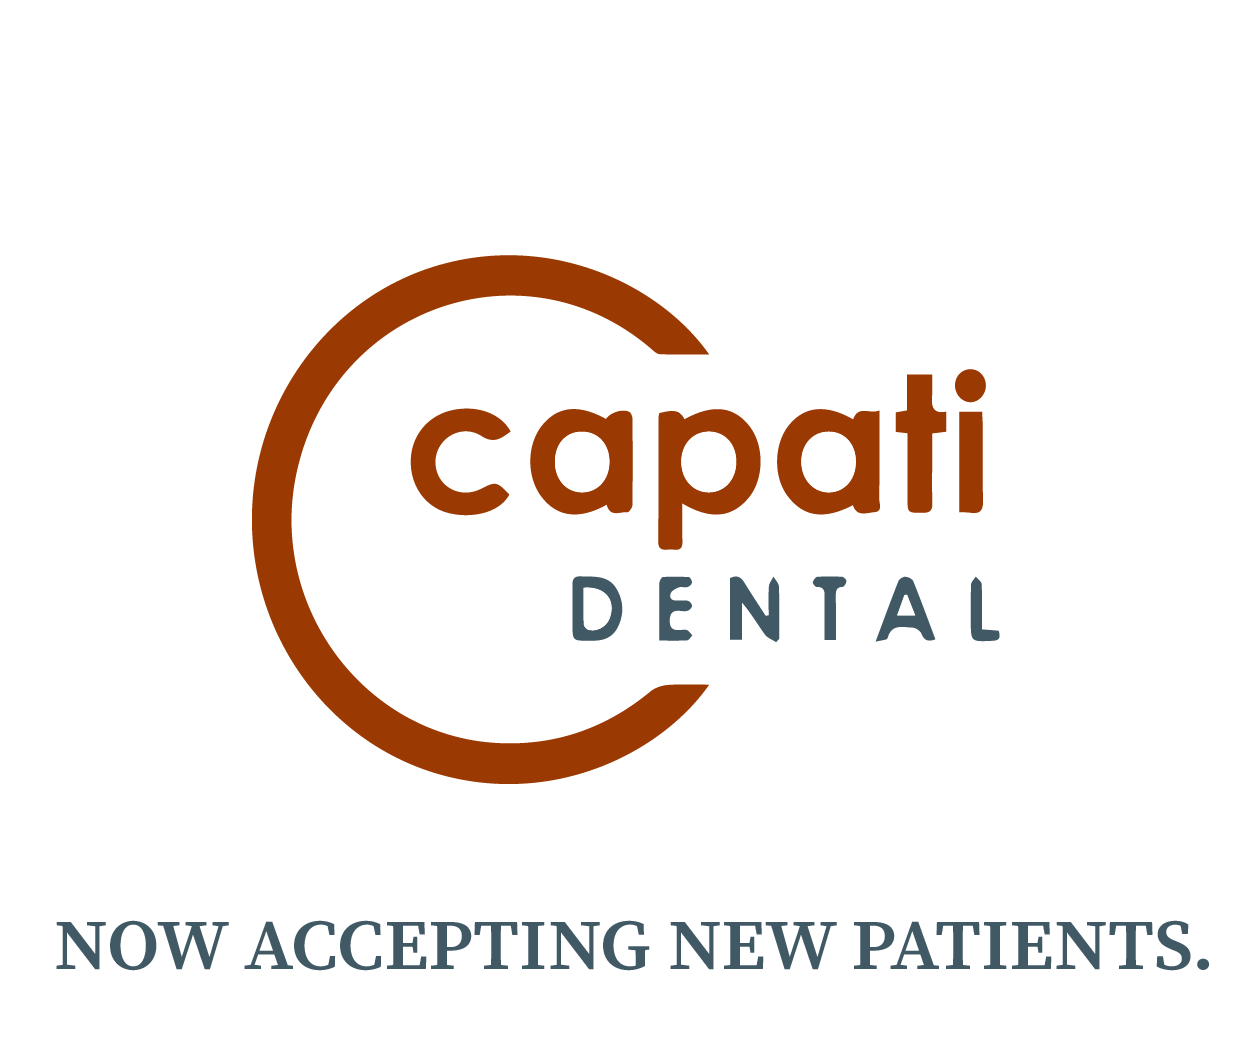 Capati-Dental-01.png